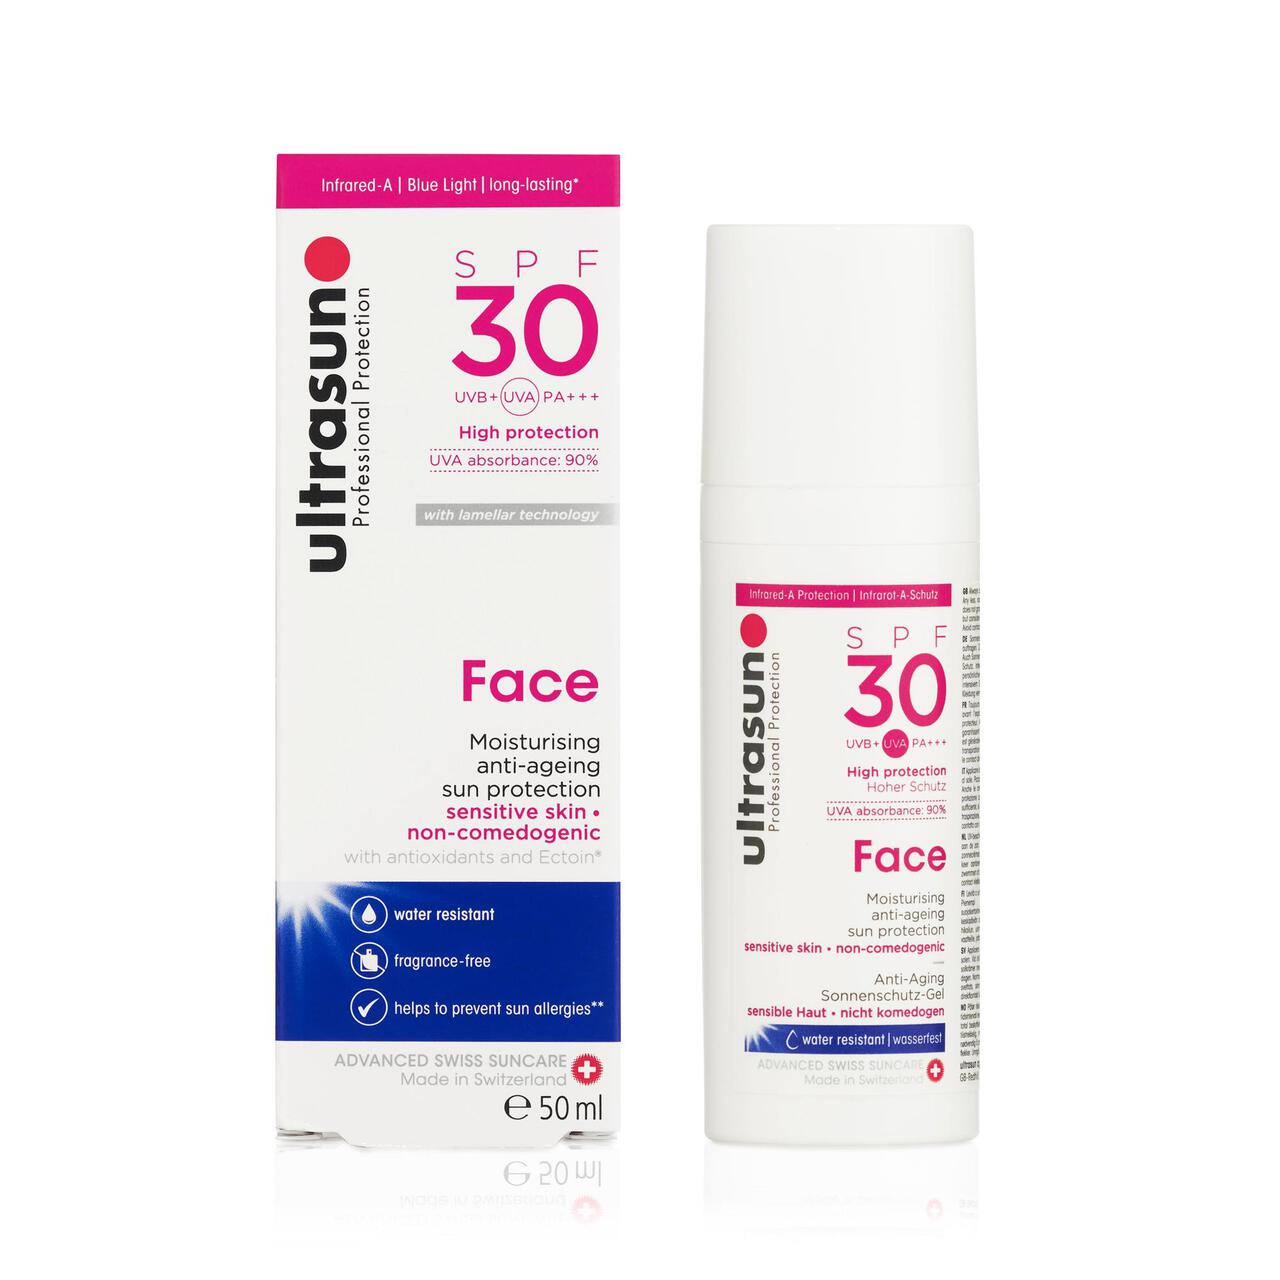 Ultrasun SPF 30 Face Sunscreen 50ml